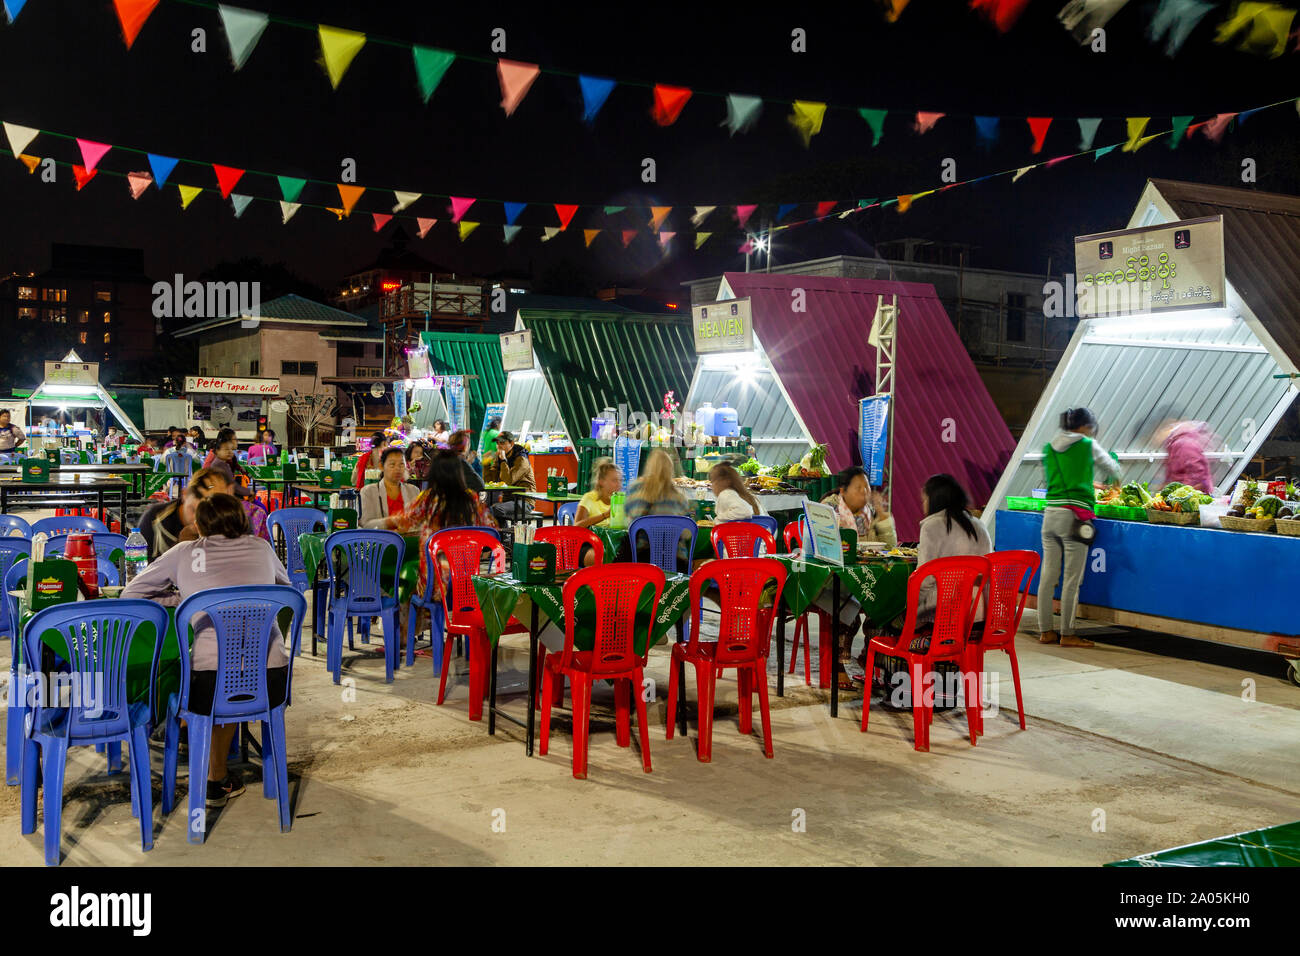 La population locale et les touristes de manger des aliments de rue à des tables dans le marché de nuit, Nyaung Shwe, le lac Inle, l'État de Shan, Myanmar. Banque D'Images